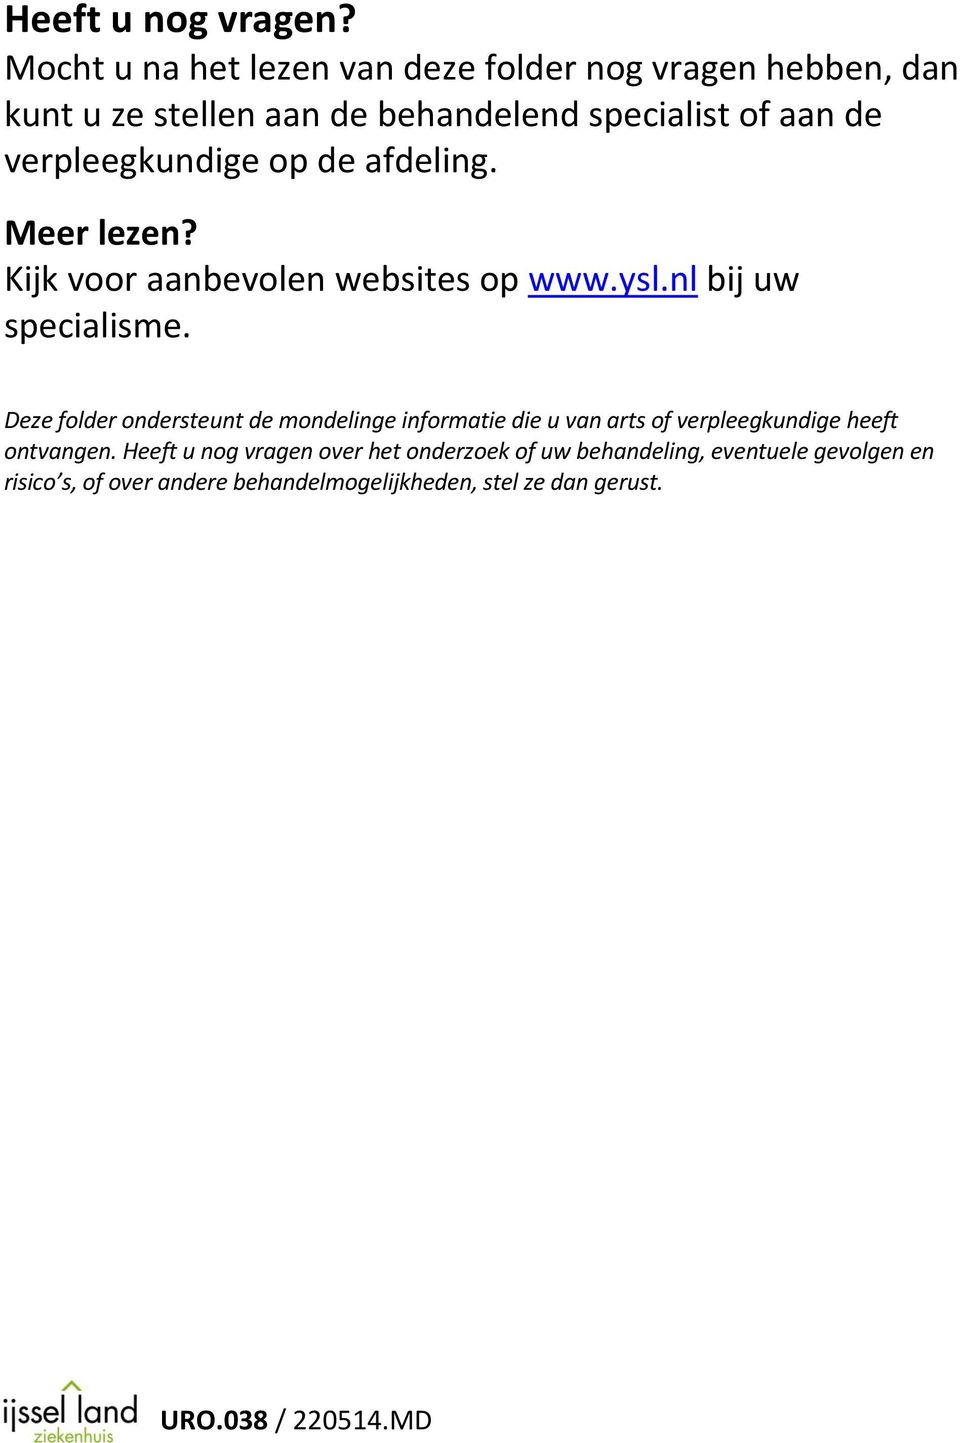 verpleegkundige op de afdeling. Meer lezen? Kijk voor aanbevolen websites op www.ysl.nl bij uw specialisme.